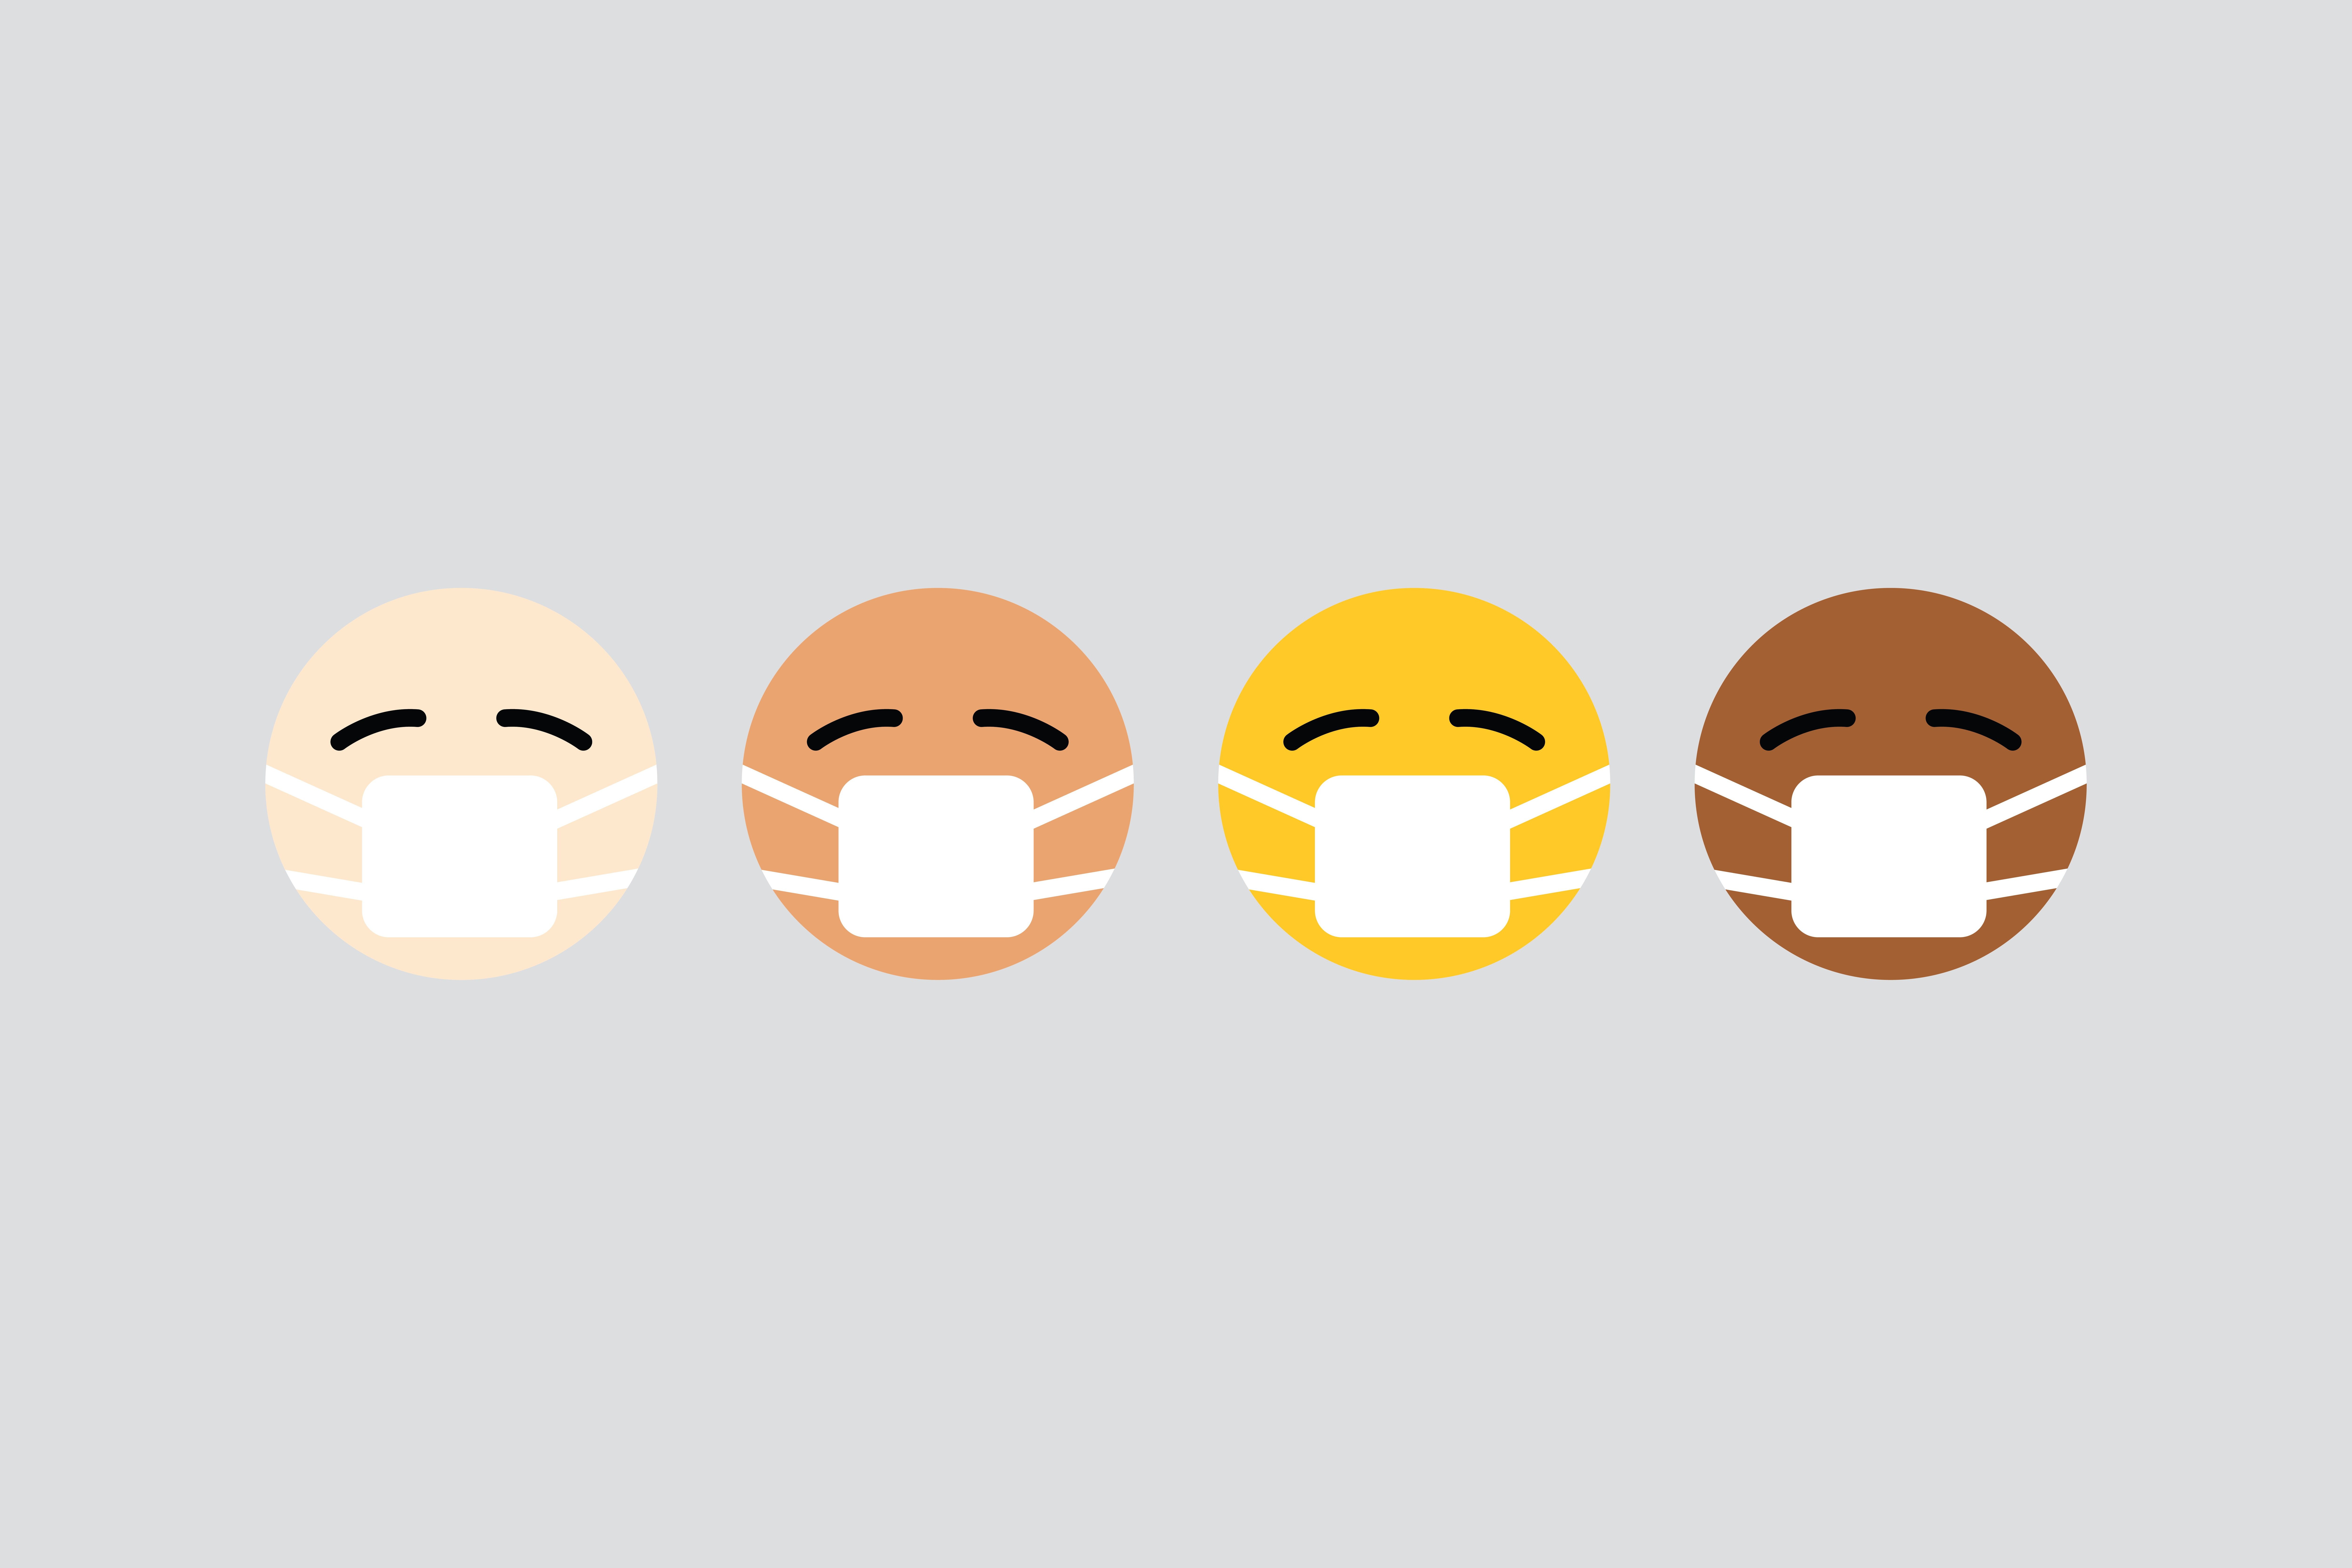 Four masked emojis